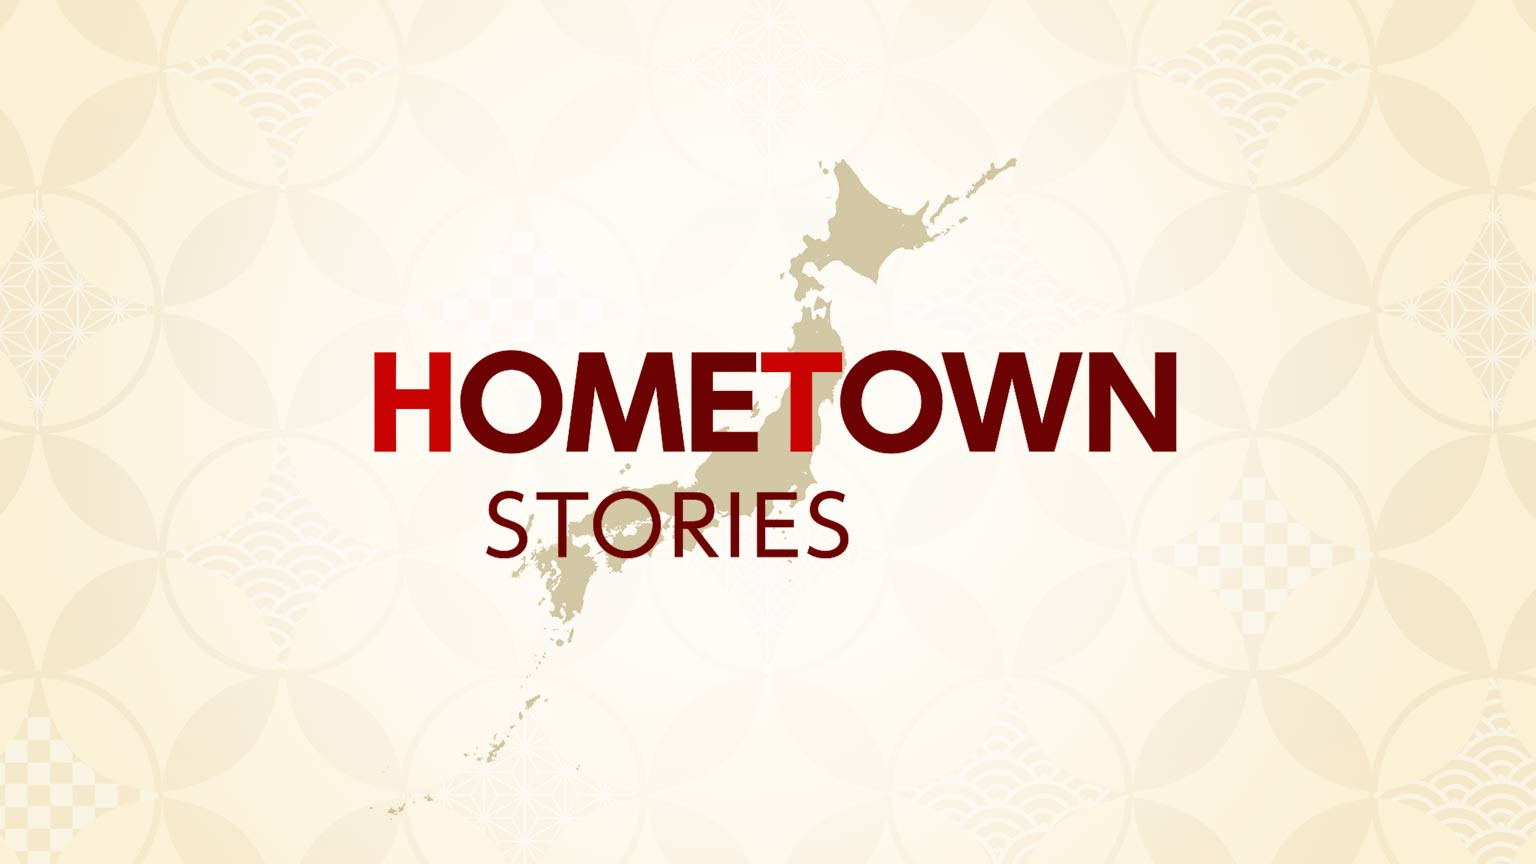 乡情记事
Hometown Stories